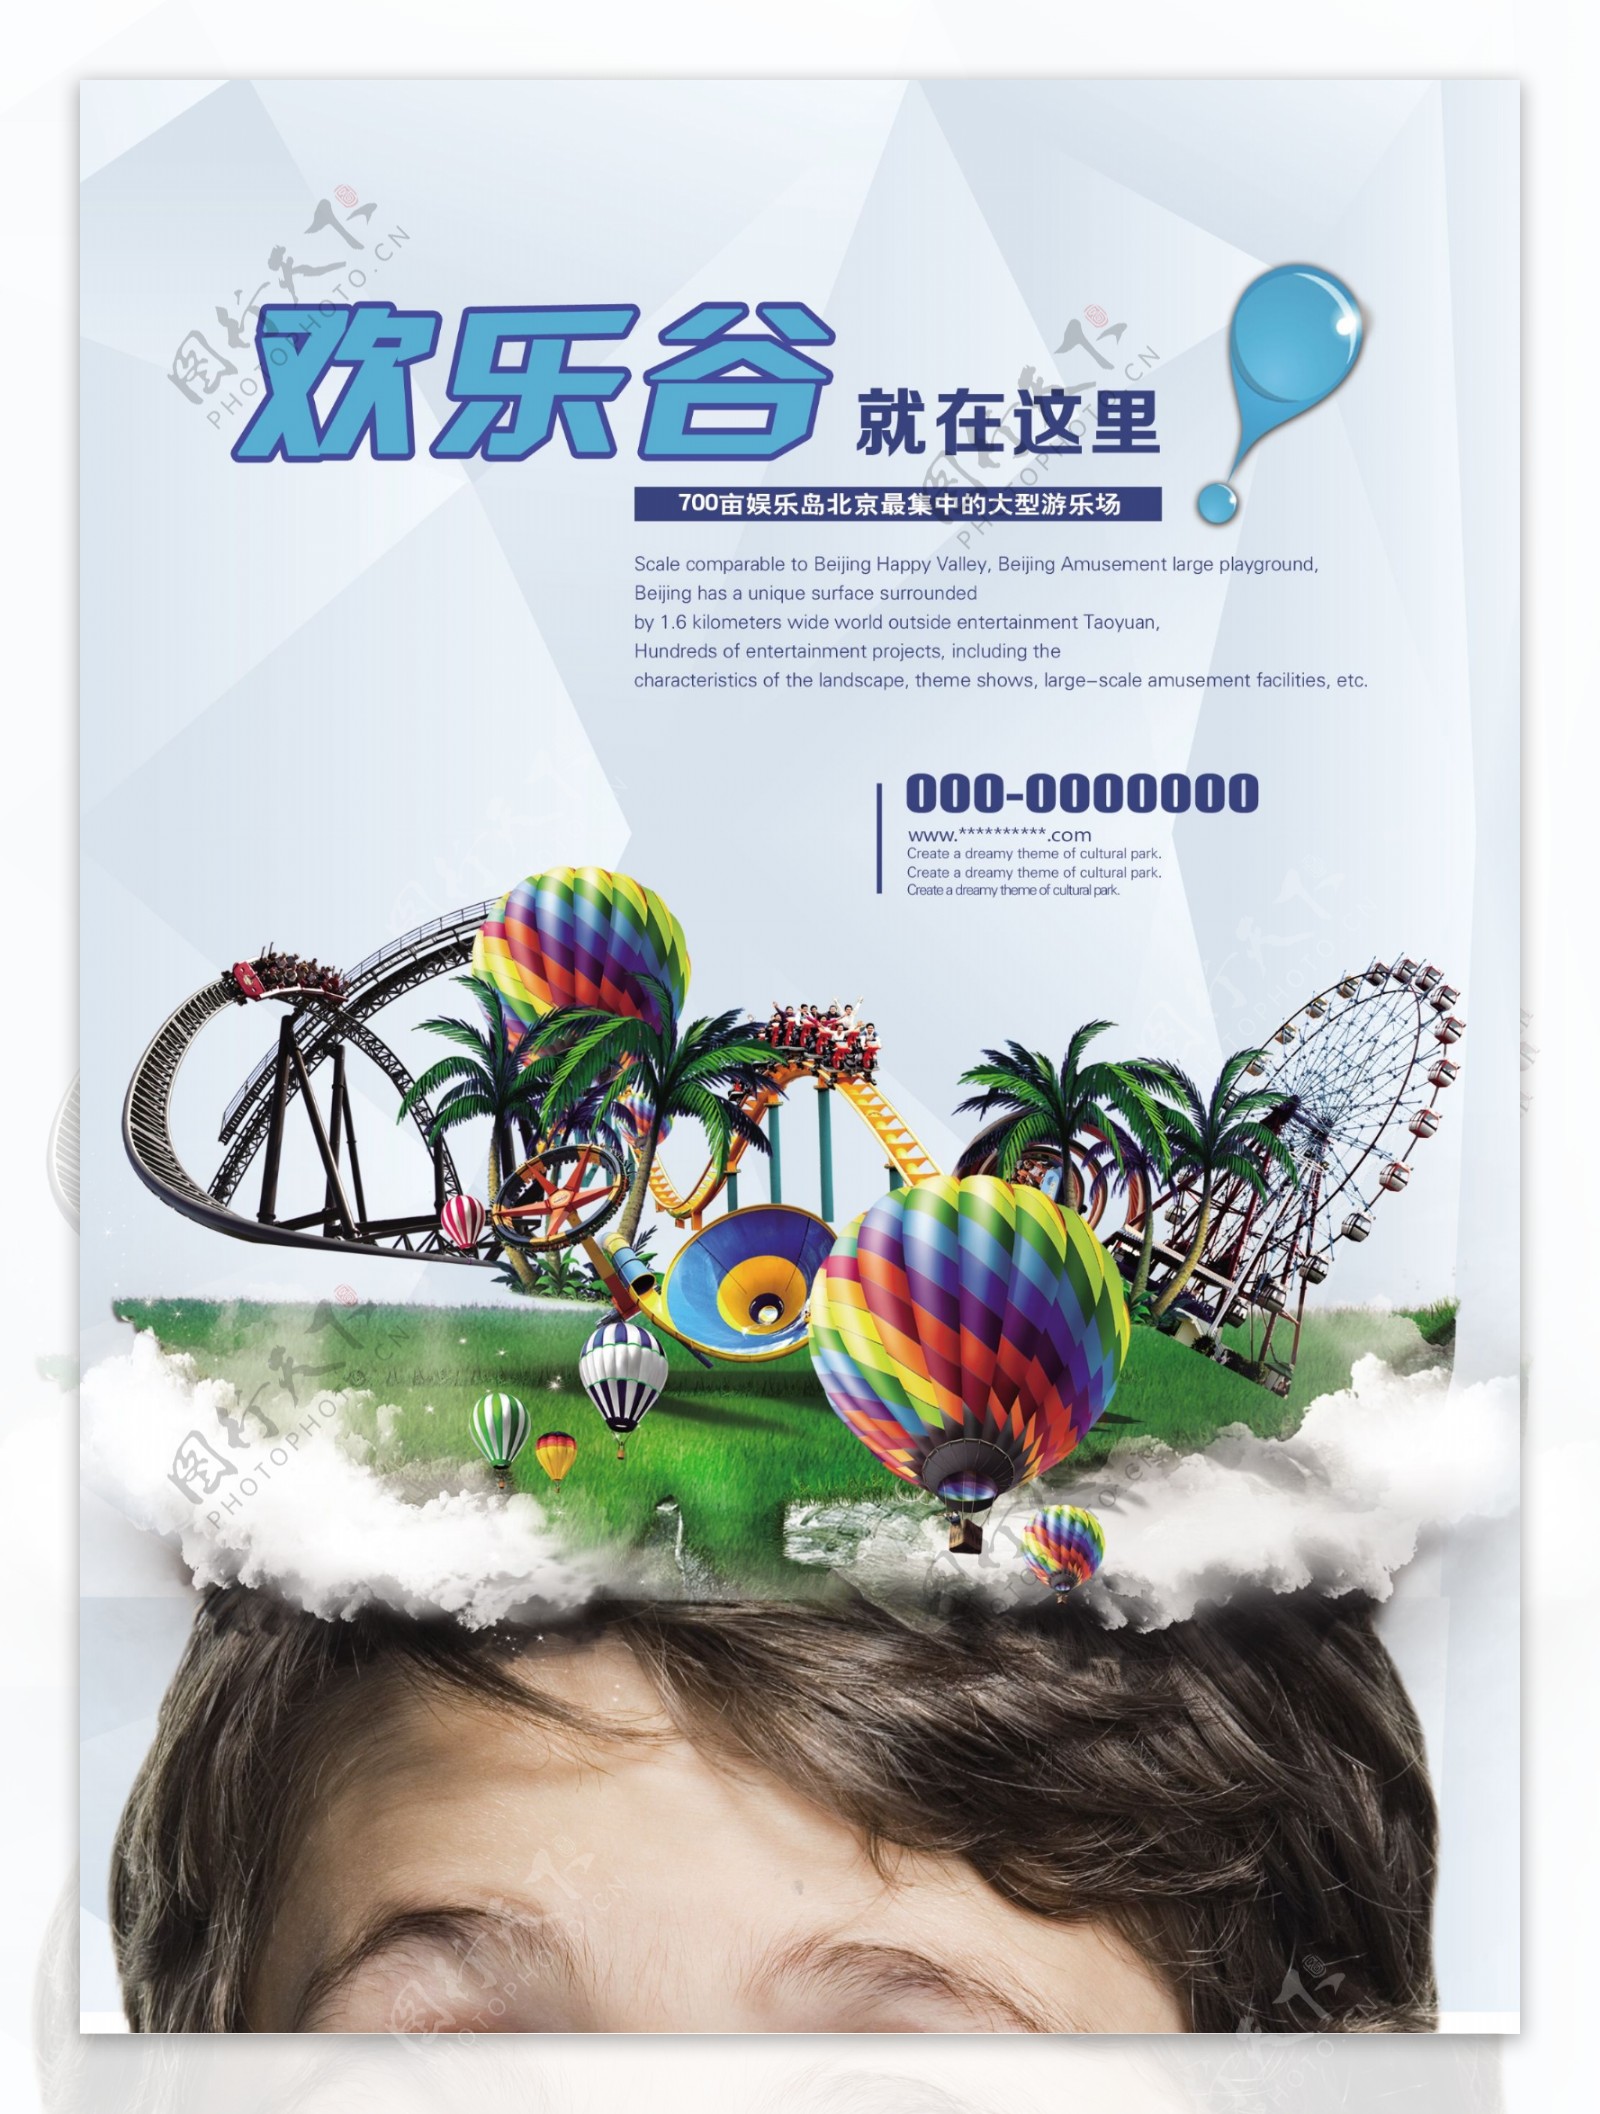 欢乐谷游乐场广告PSD素材